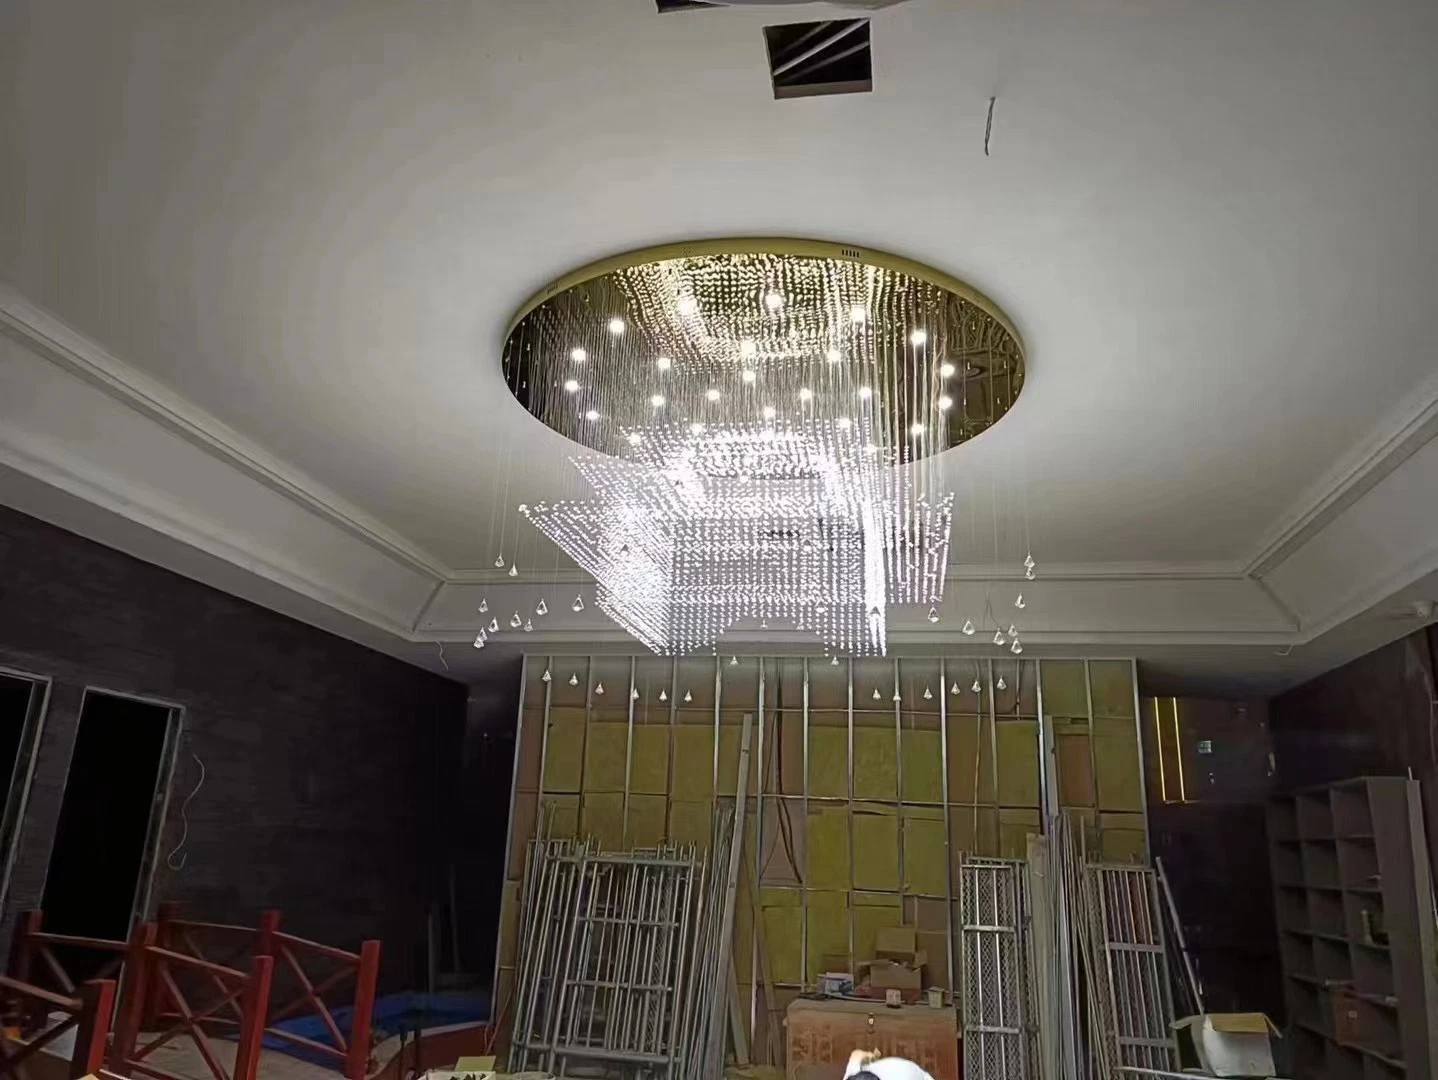 Luxus Kristall Kronleuchter Pendelleuchte Lobby Decke Beleuchtung Leuchten LED Licht